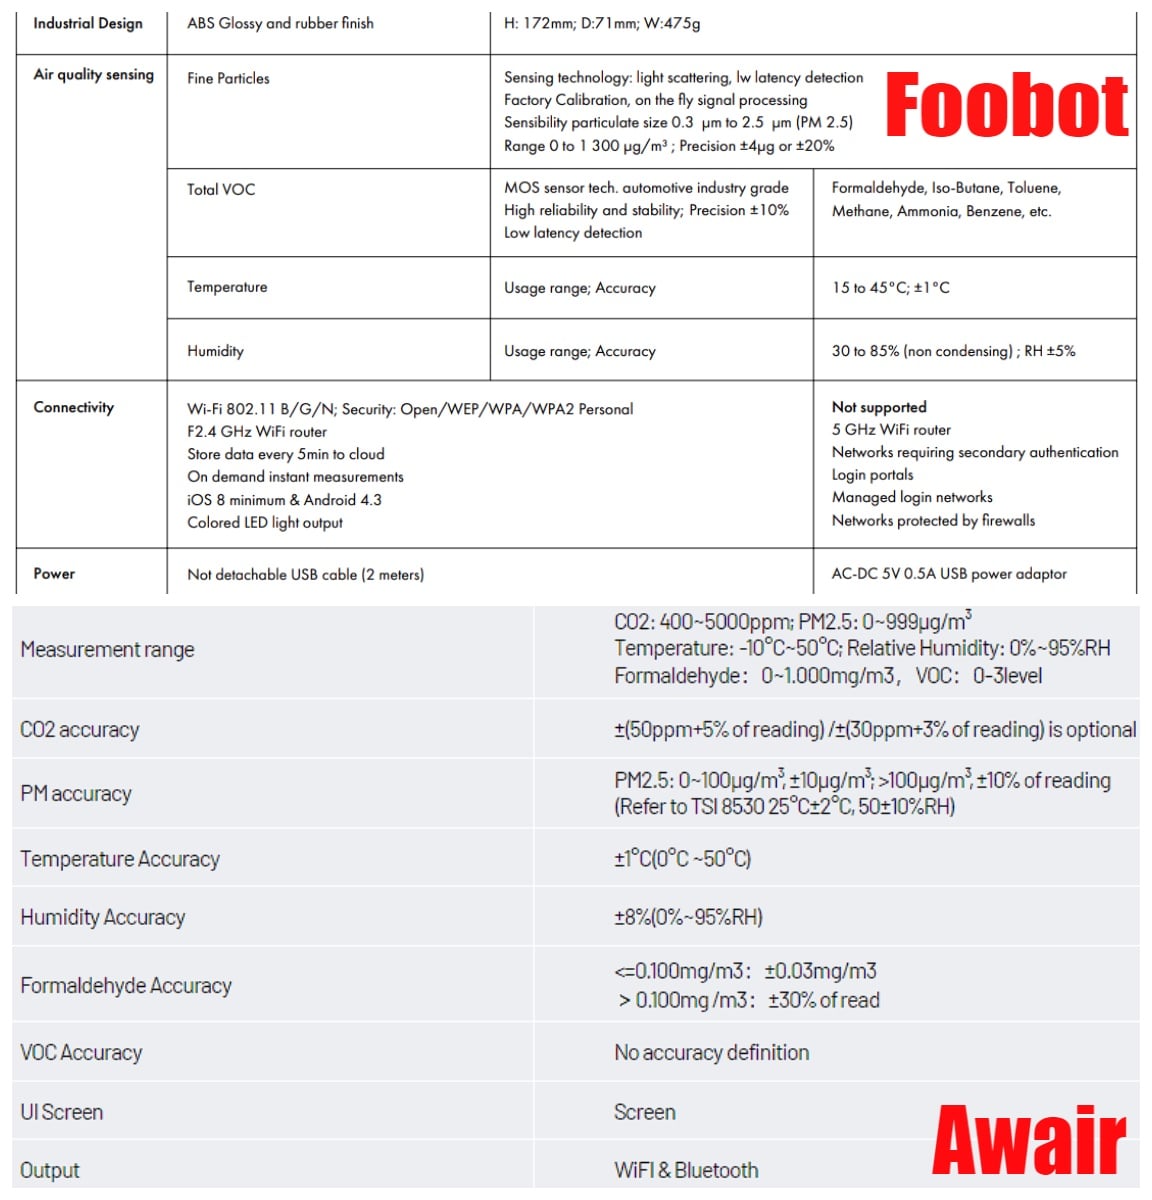 Foobot or Awair